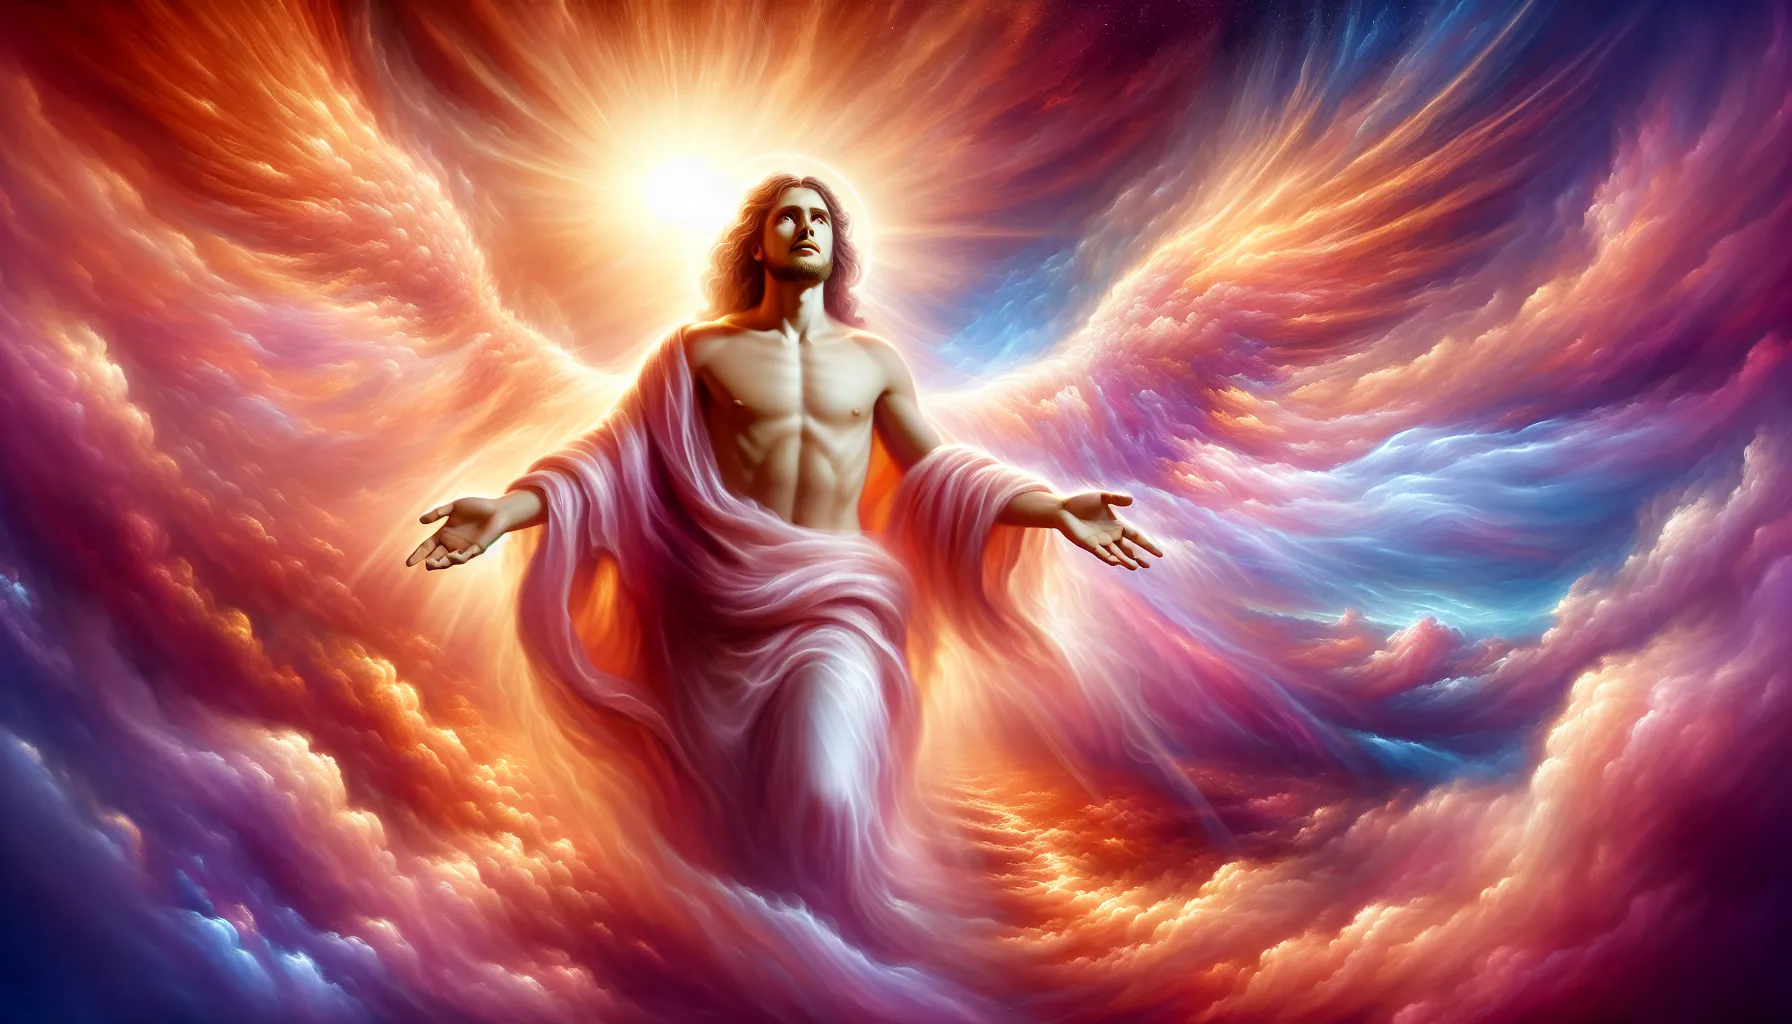 Representación artística de Jesús ascendiendo al cielo con un cuerpo físico